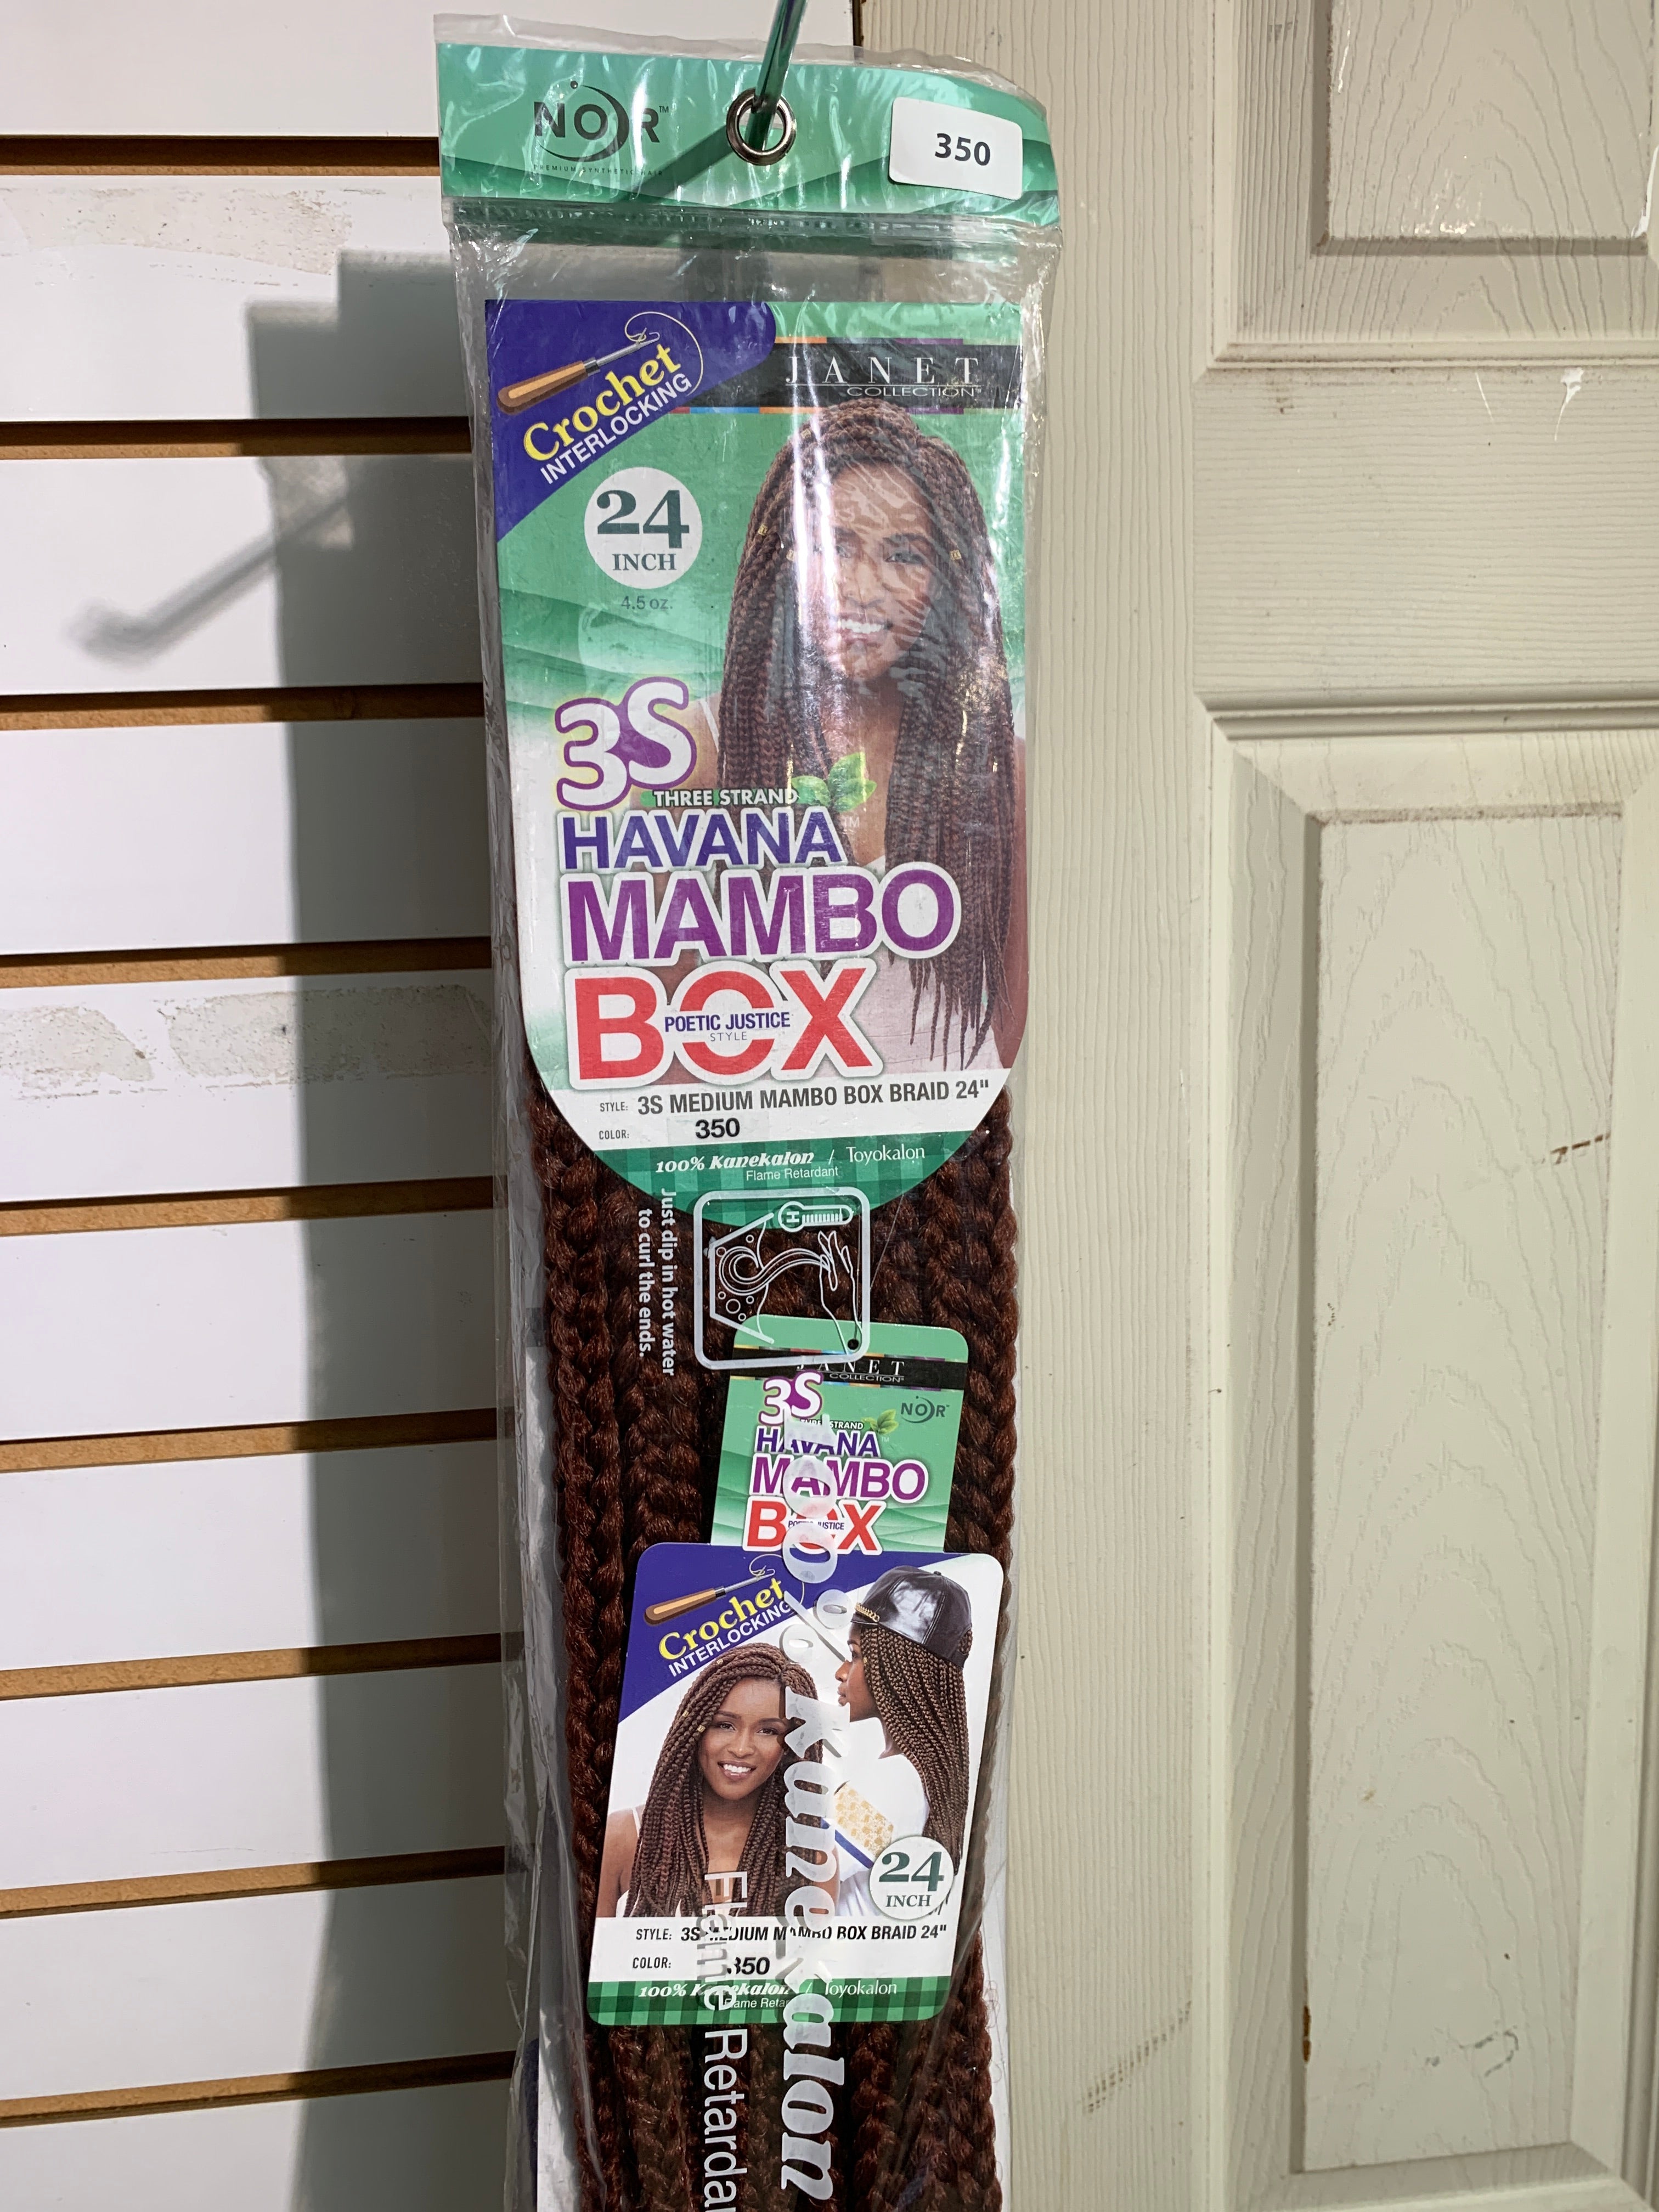 Janet 3s medium mambo box braid 24”